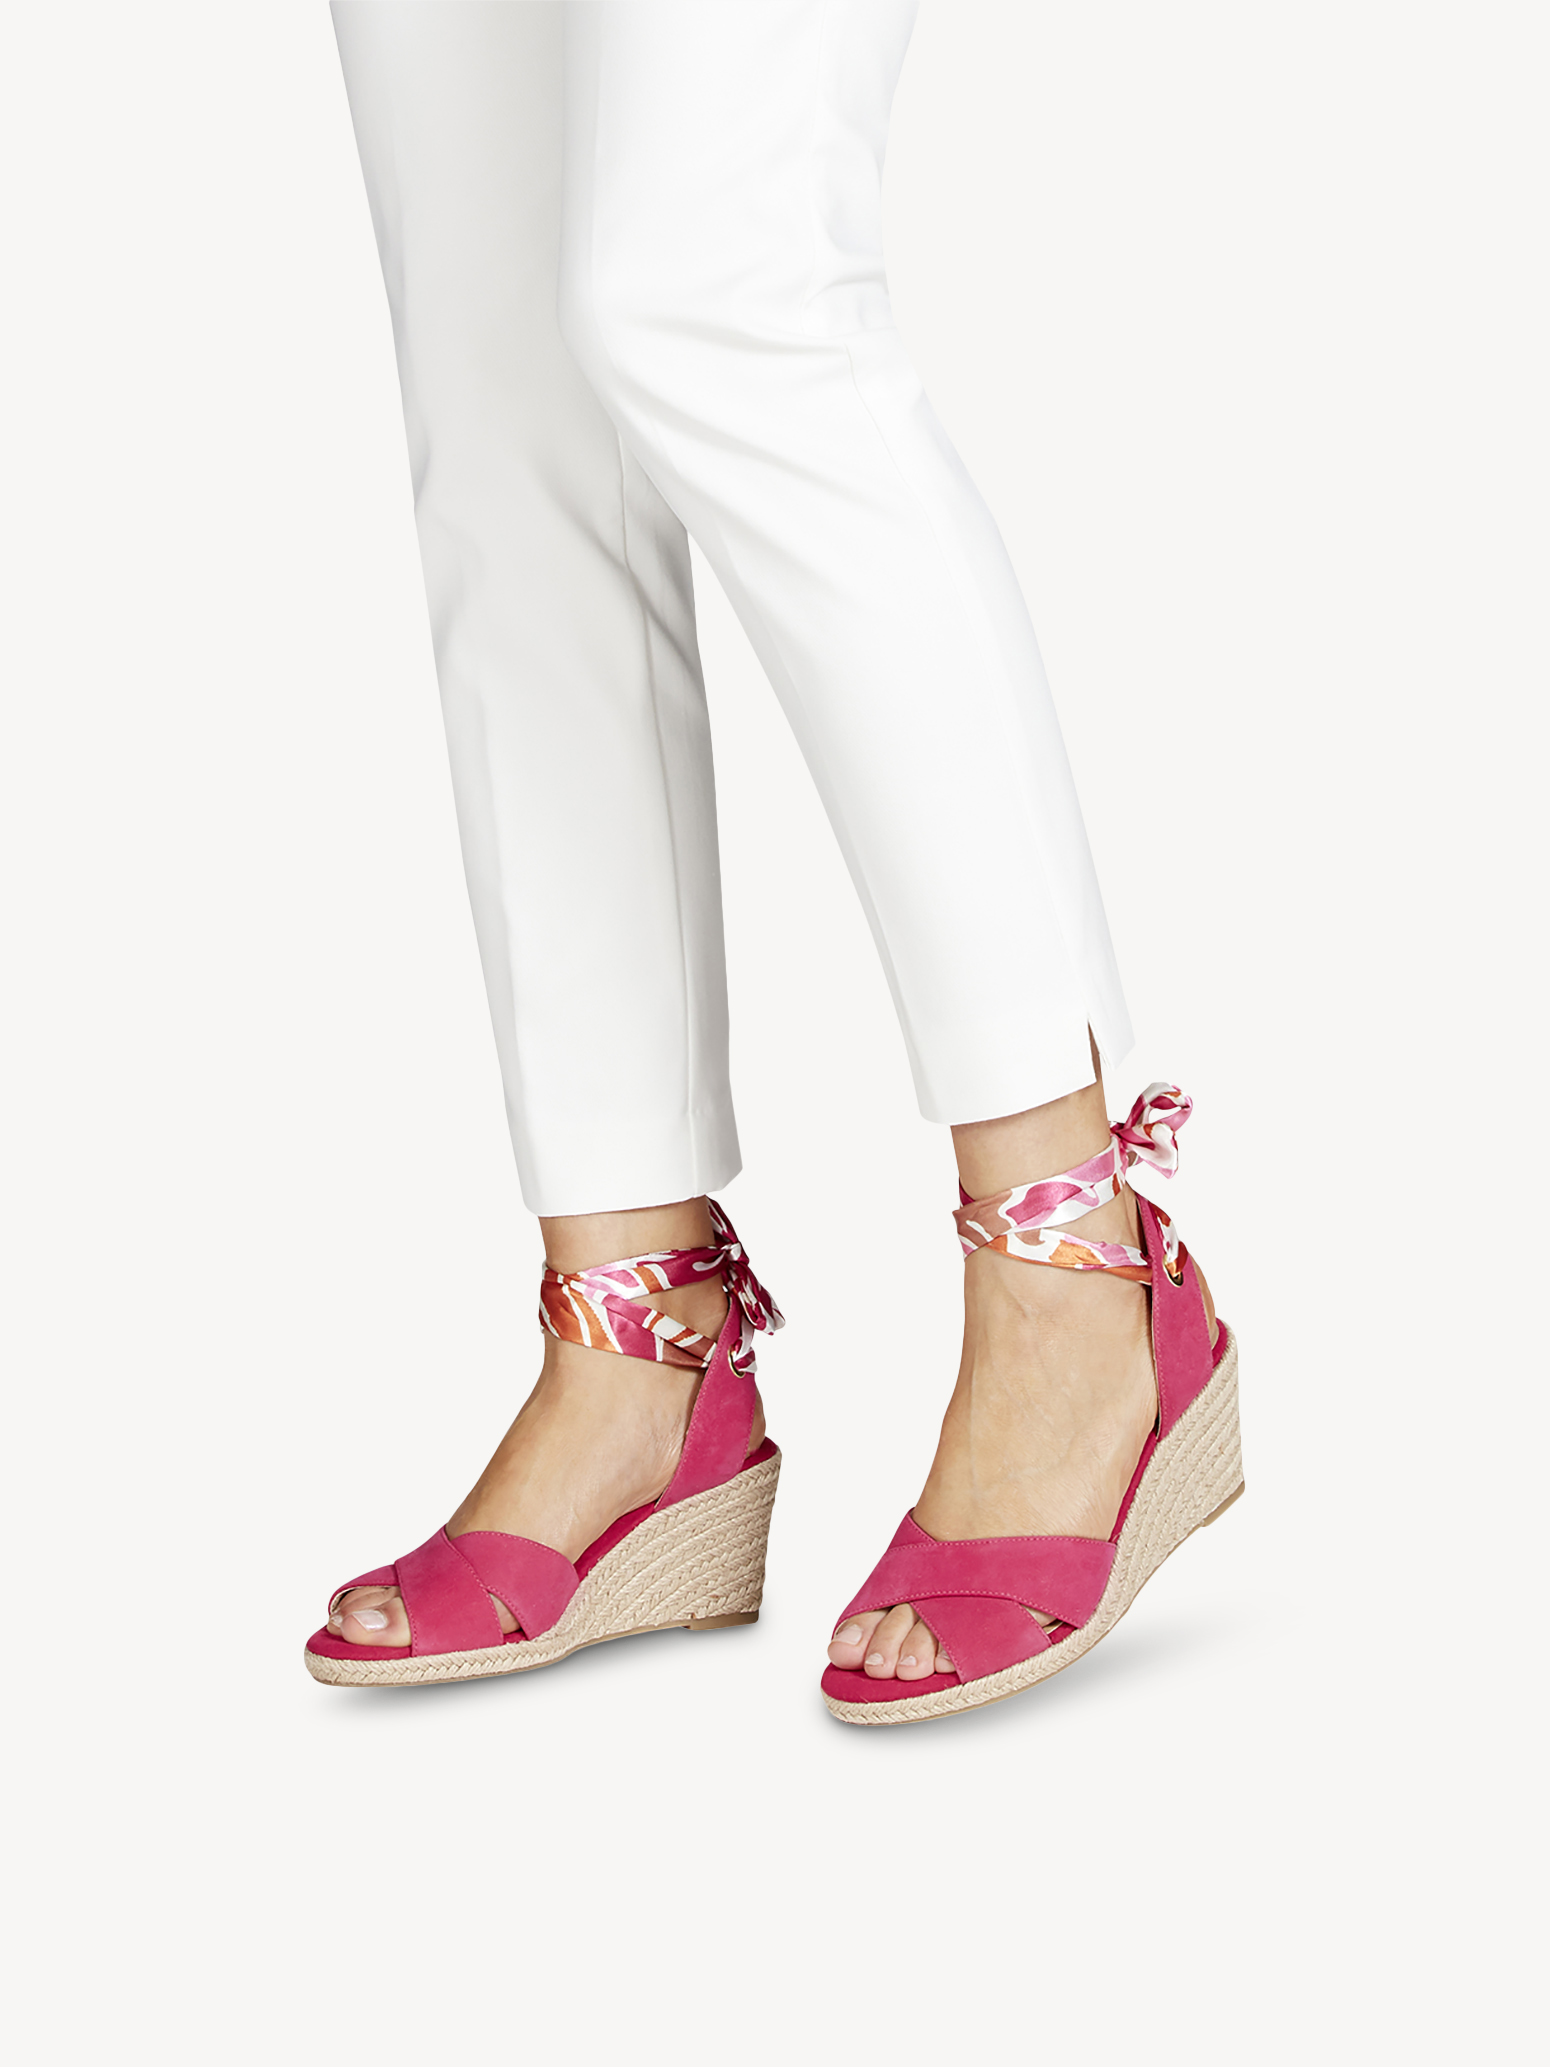 Туфли летние открытые жен. (розовый) - изображение №1